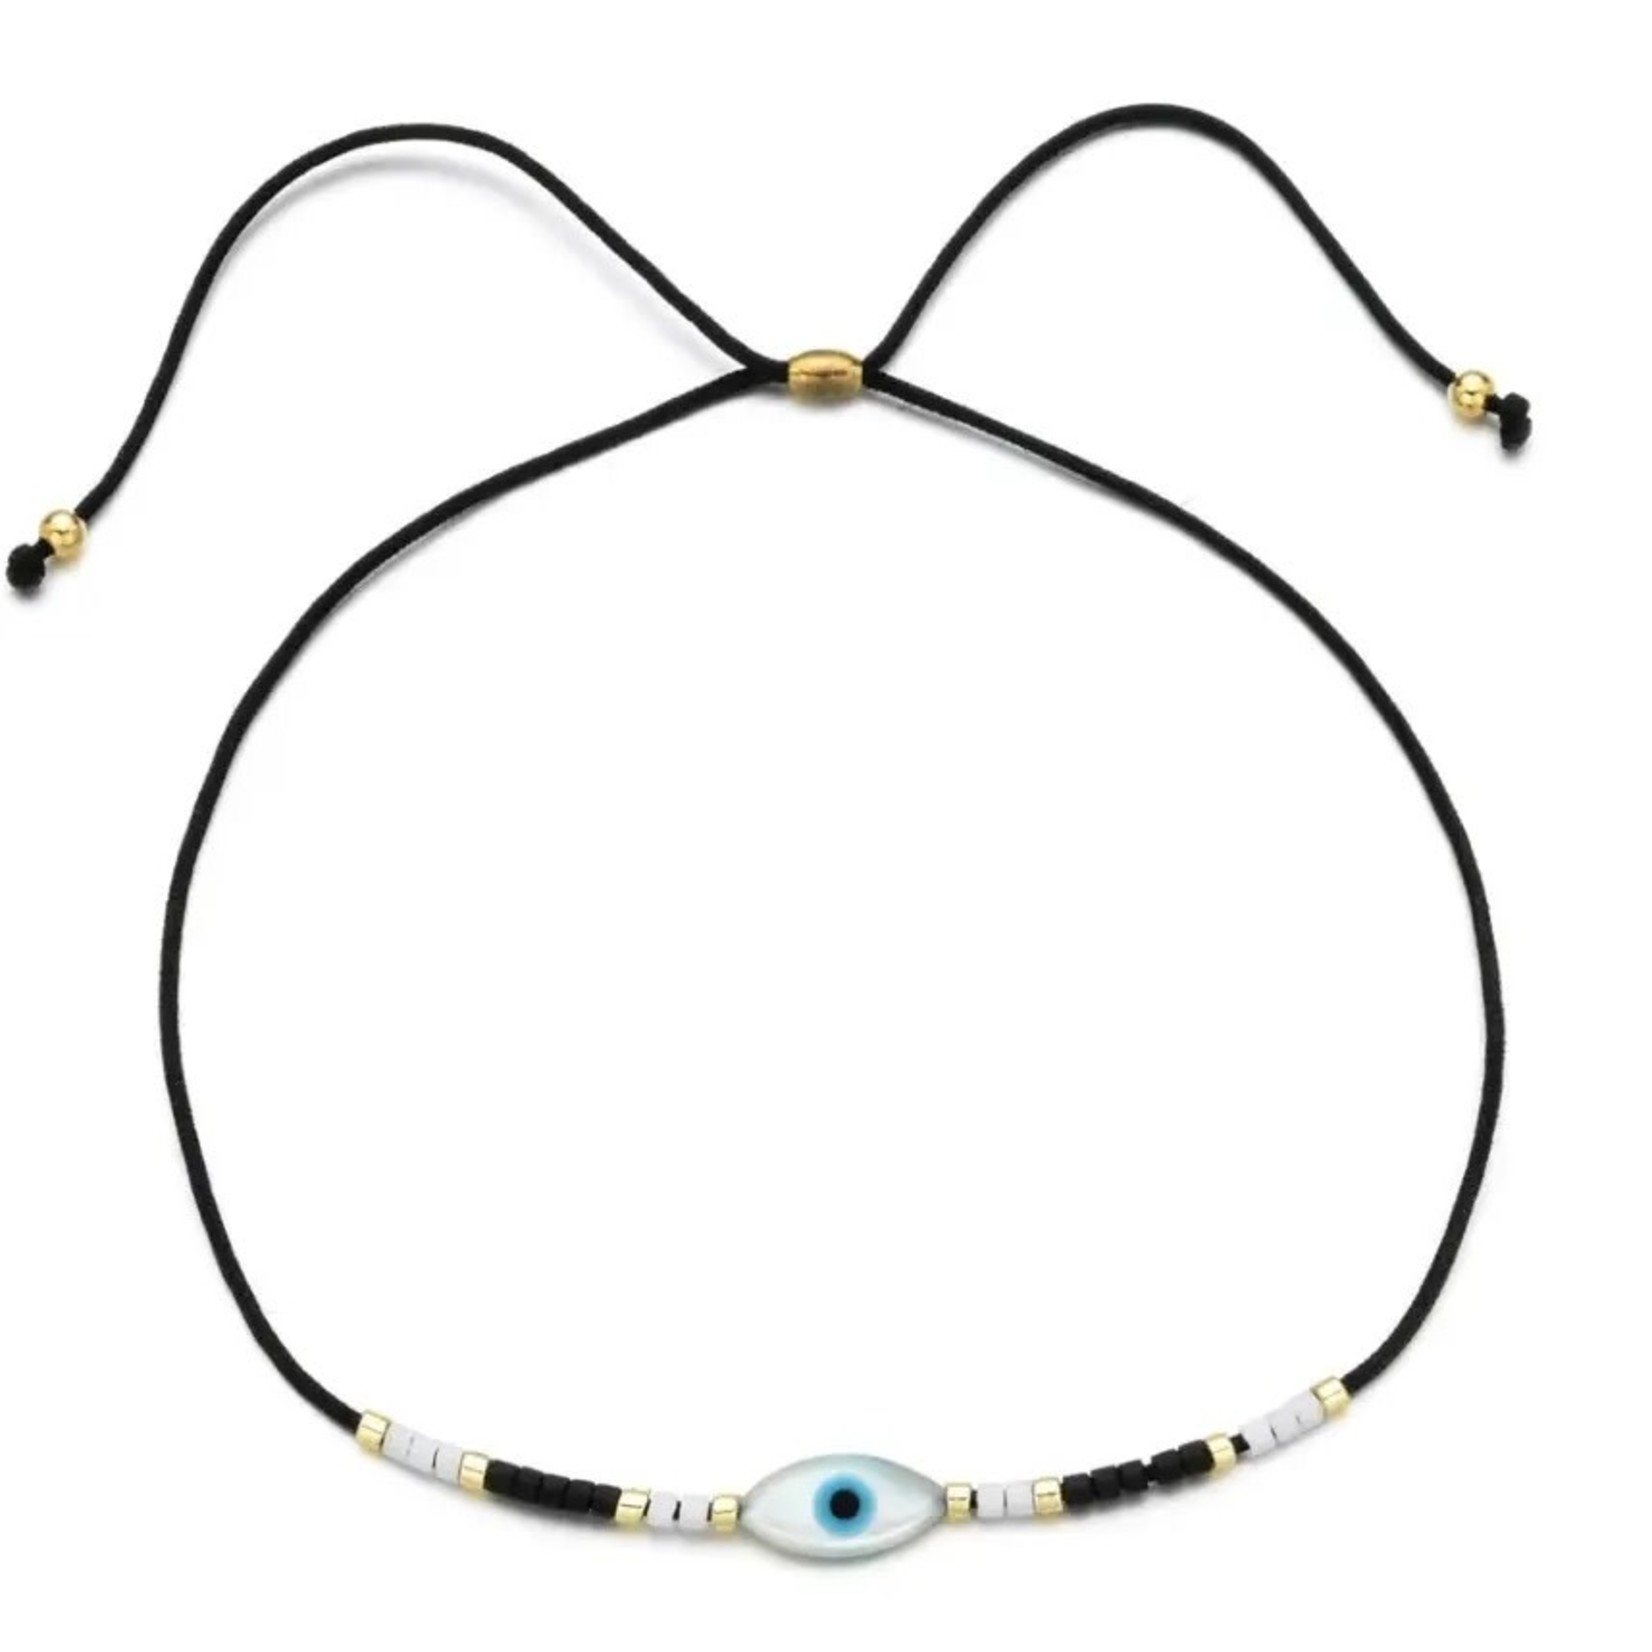 Kindred Row Evil Eye Cord Bracelet